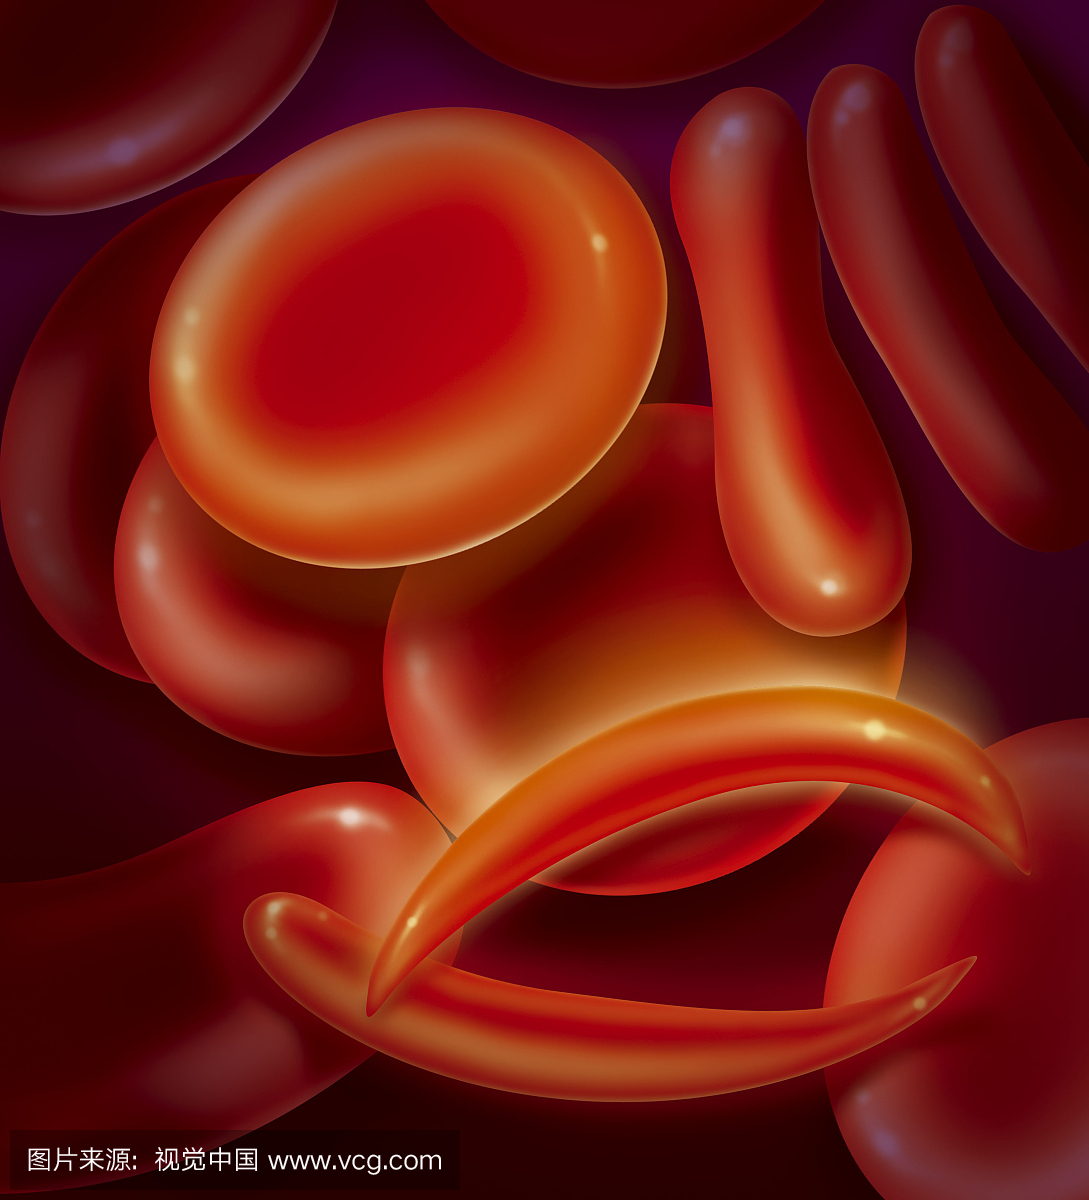 免疫球蛋白血症或镰状细胞性贫血,插图